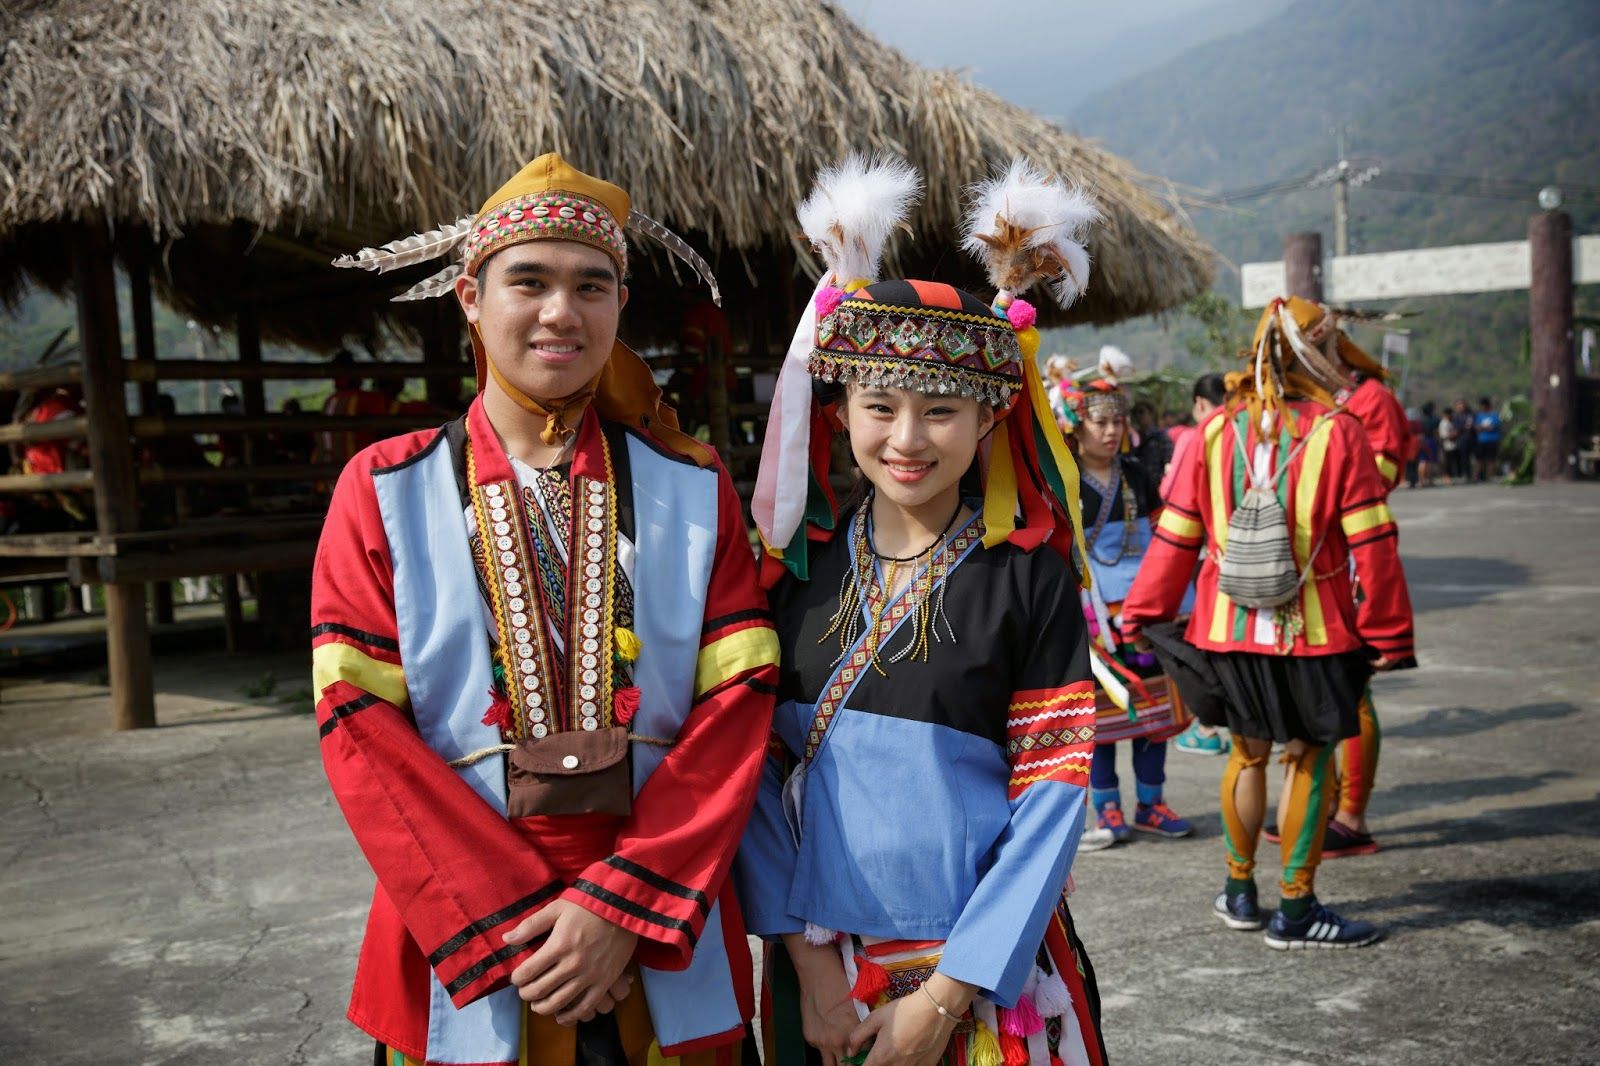 台湾 中華民国 の原住民族 Top16 と 小さい島国にこれだけの少数民族がいる理由